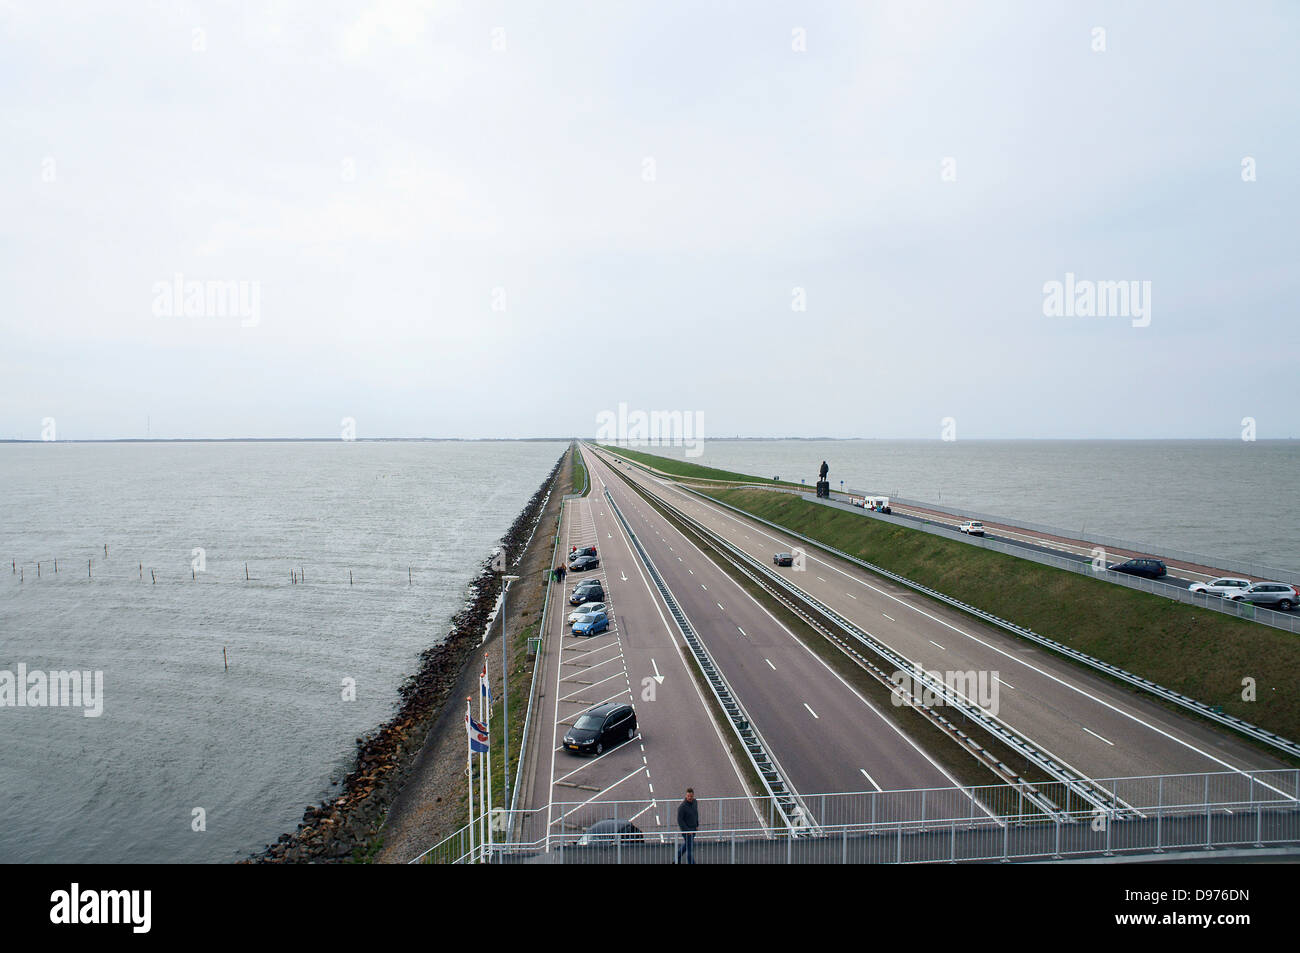 Breezanddijk, Afsluitdijk causeway Stock Photo